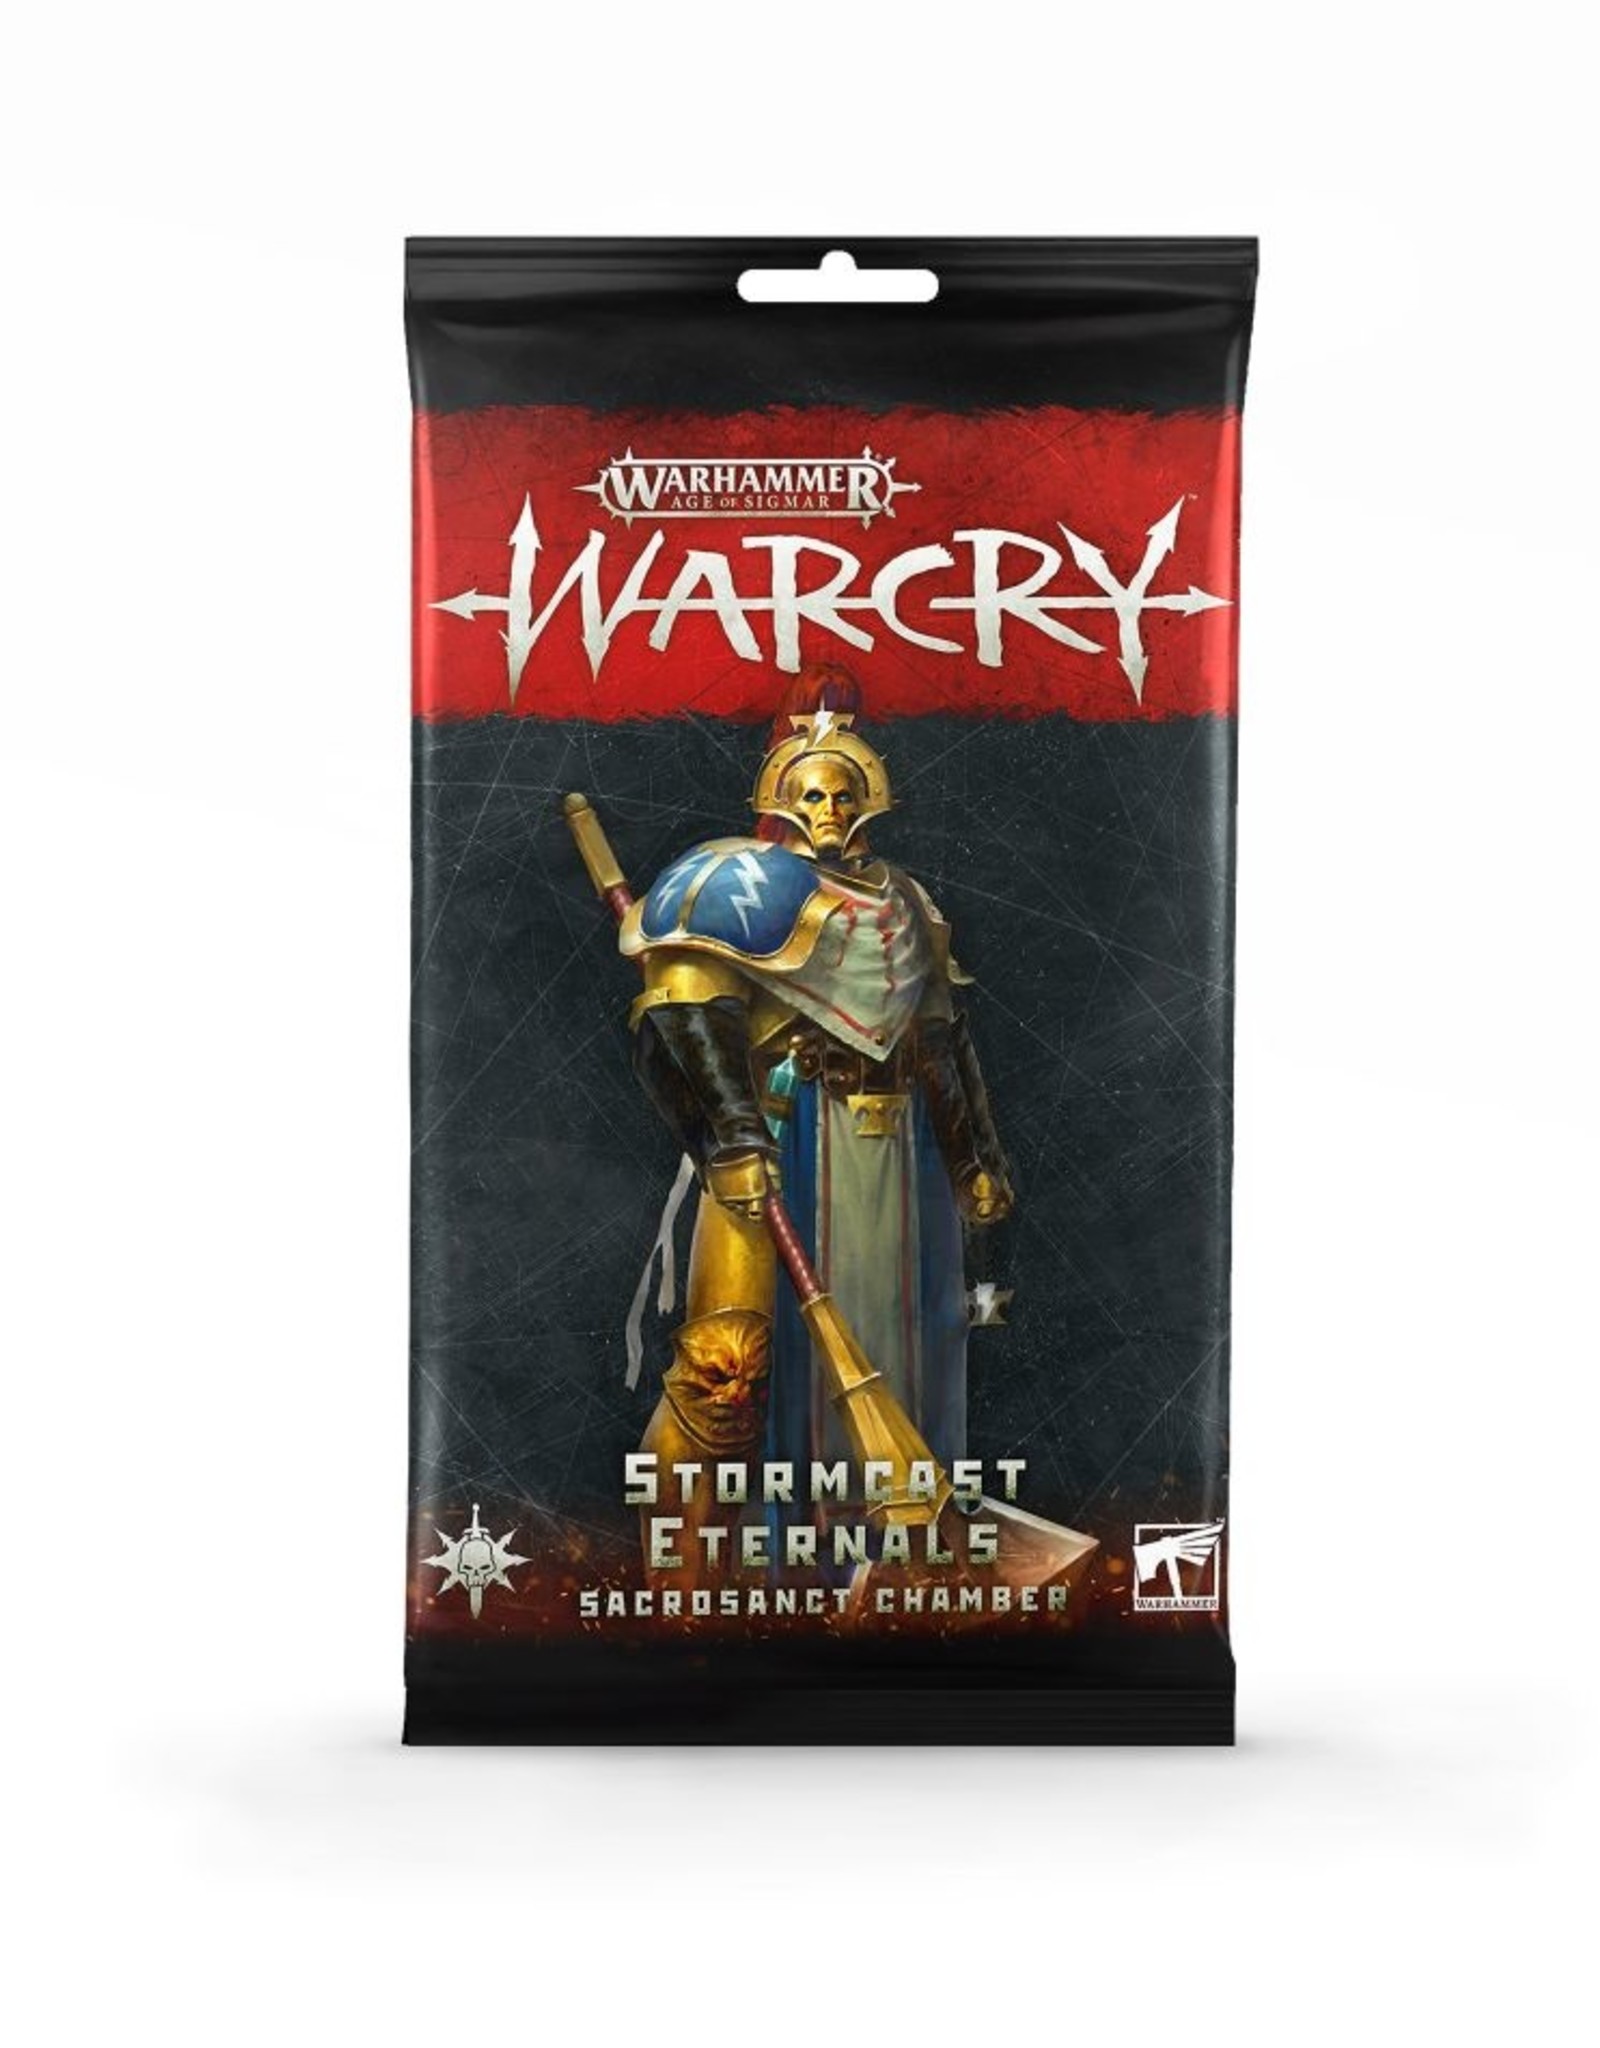 Games Workshop Warhammer Age of Sigmar: Warcry Stormcast Eternals Sacrosanct Chamber